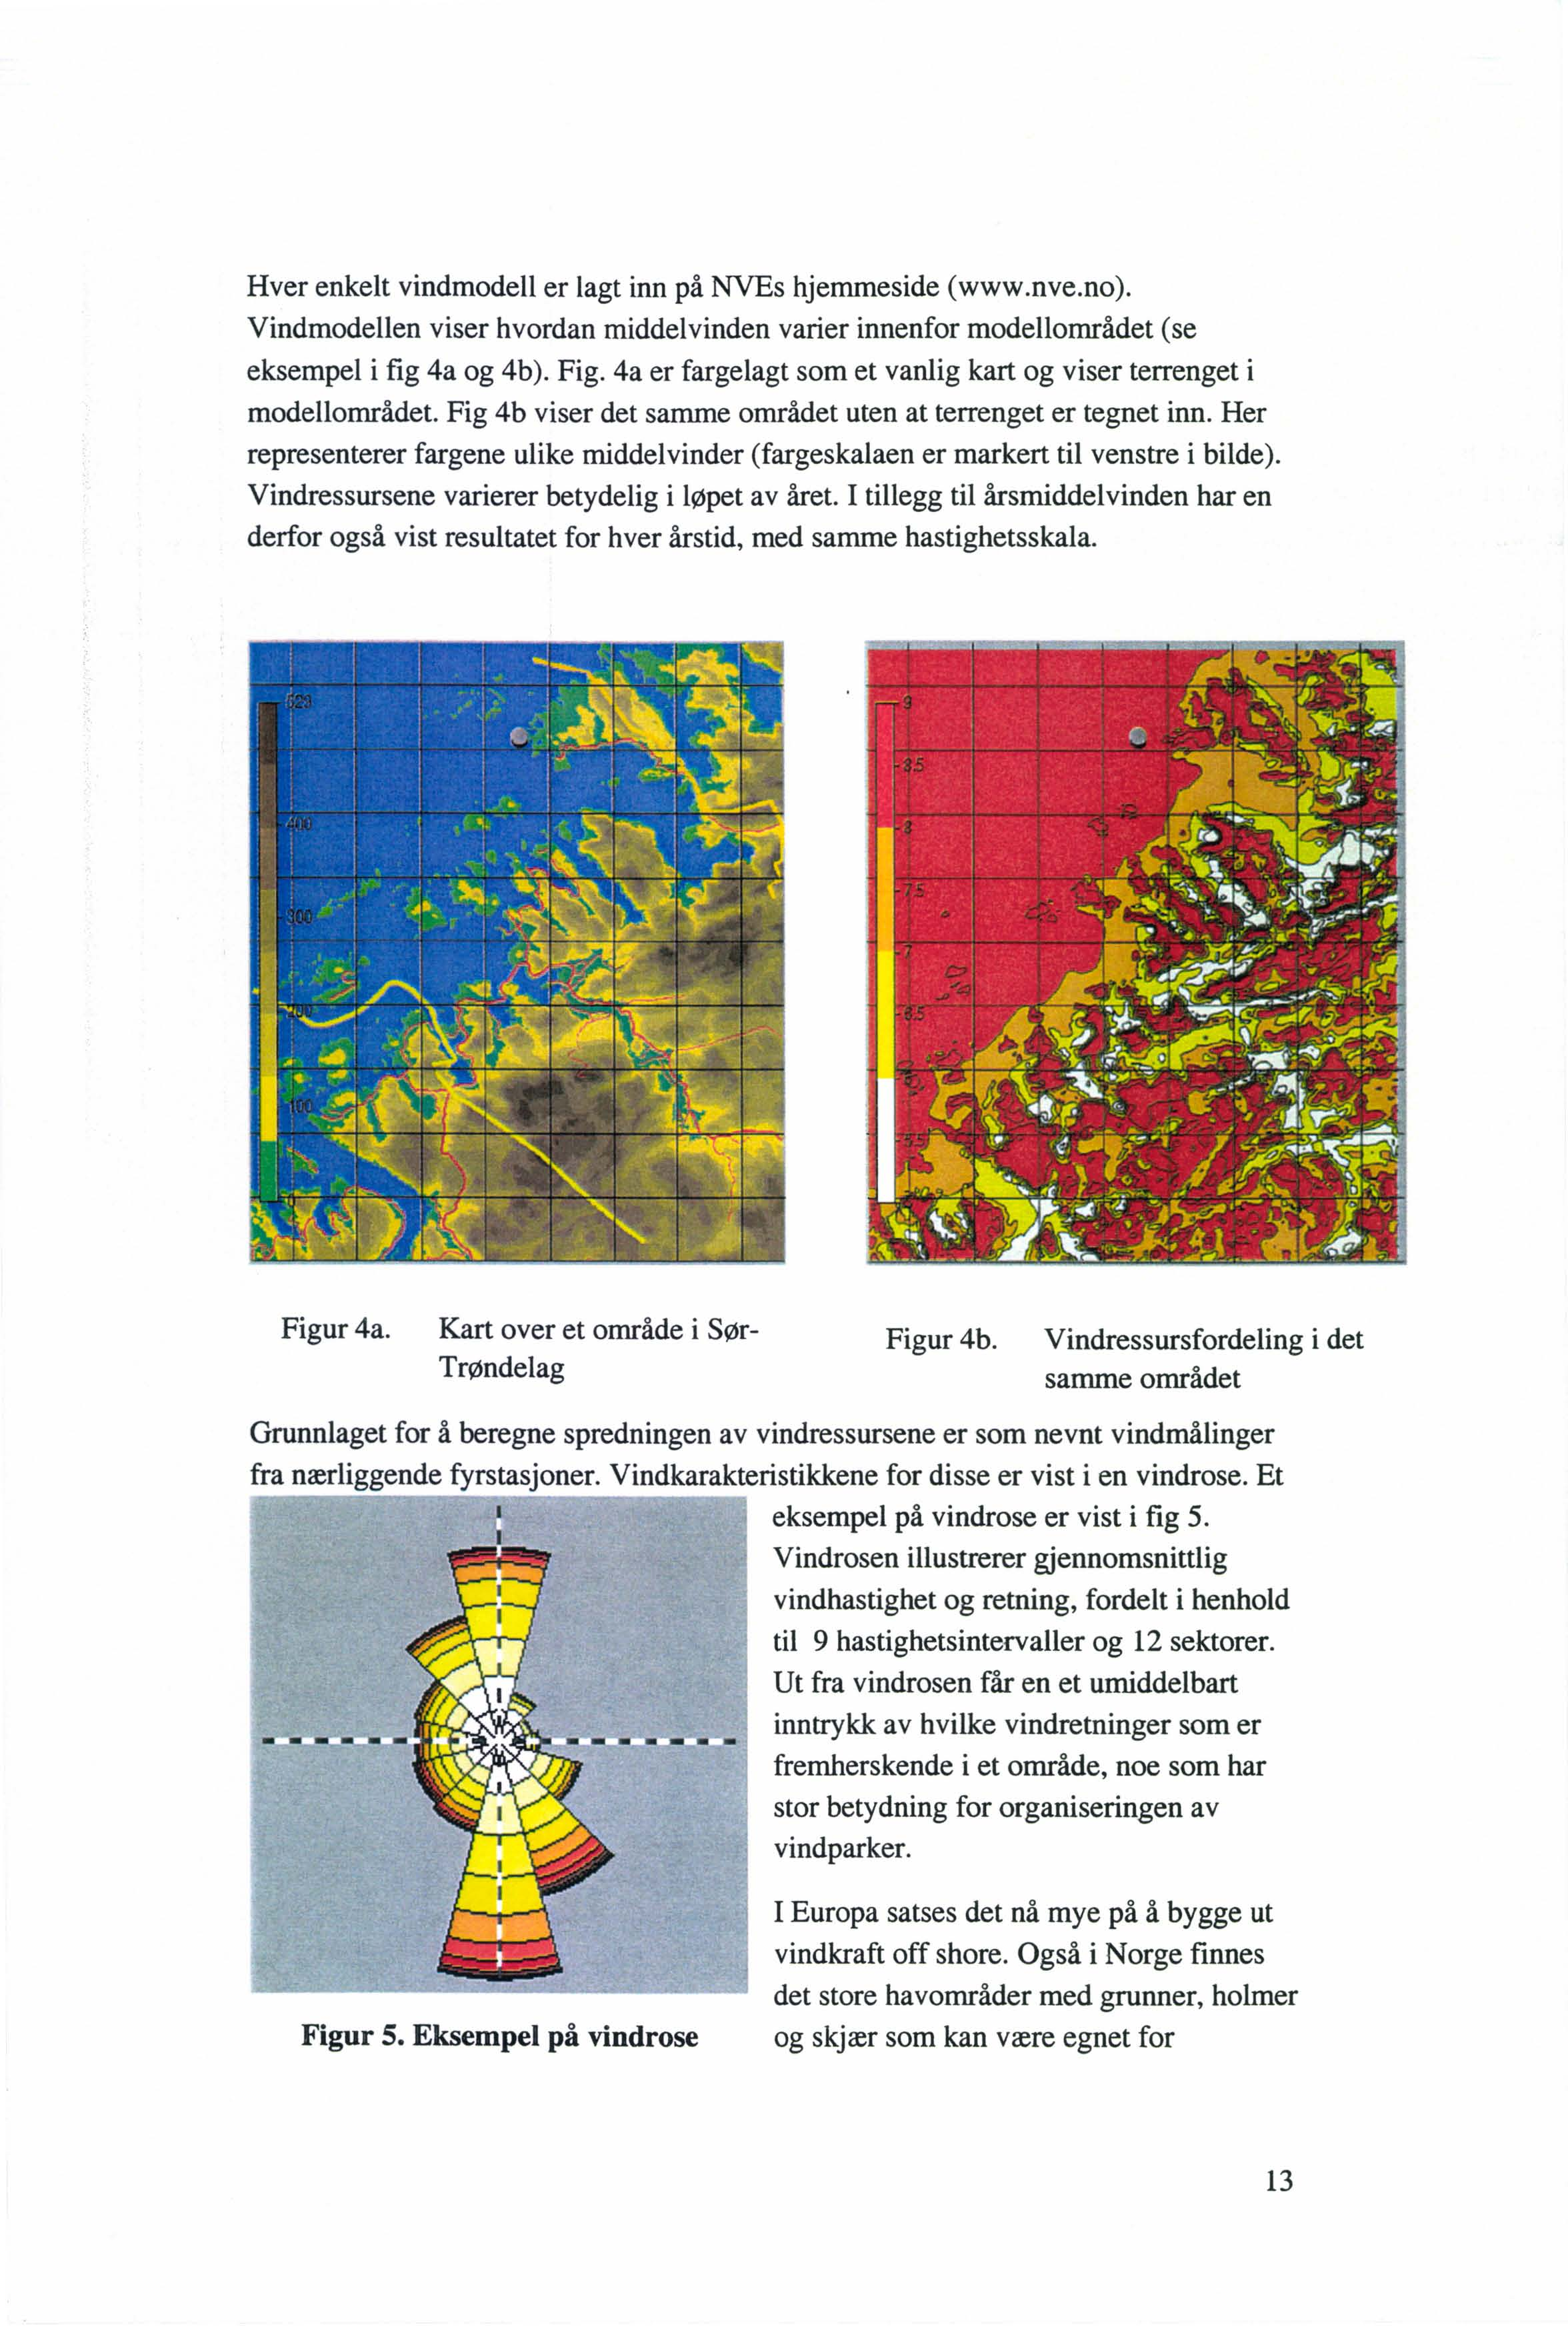 Hver enkelt vindmodell er lagt inn på NVEs hjemmeside (www.nve.no). Vindmodellen viser hvordan middel vinden varier innenfor modellområdet (se eksempel i fig 4a og 4b). Fig.